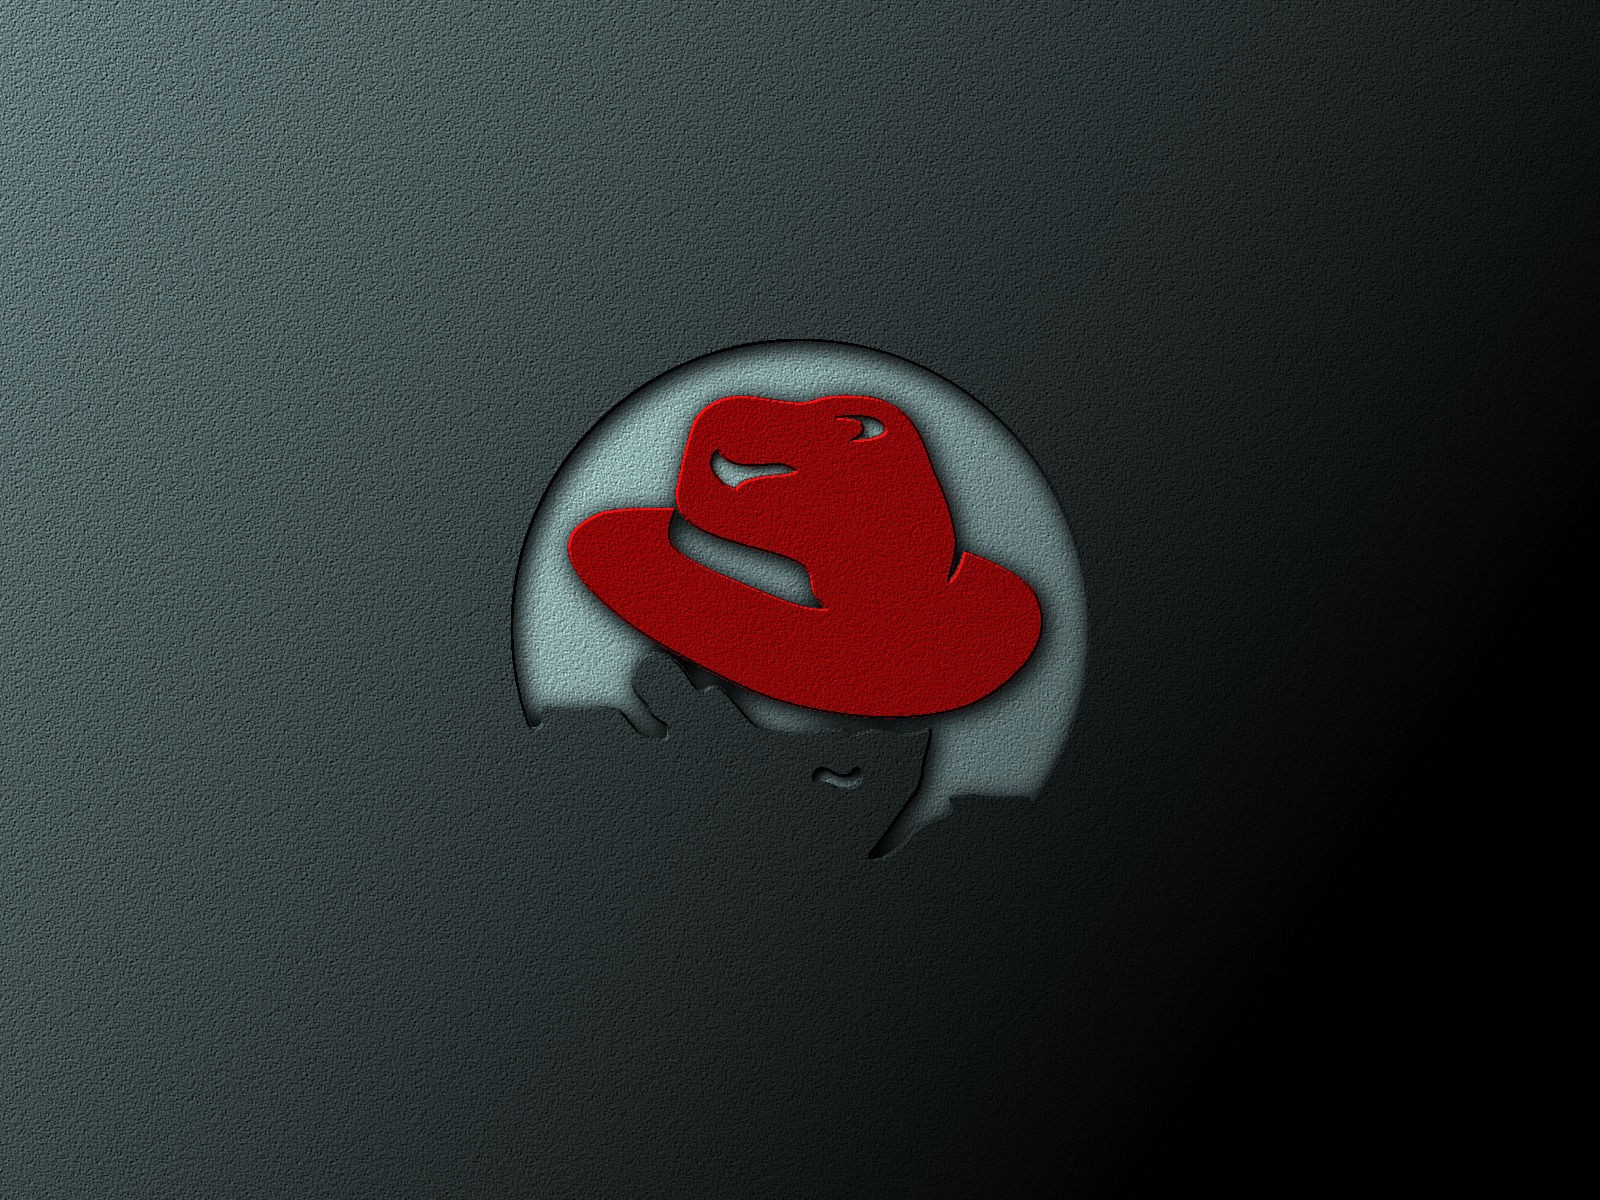 Ред хат. Редхат линукс. Red hat. Обои Red hat. Red hat Linux рабочий стол.